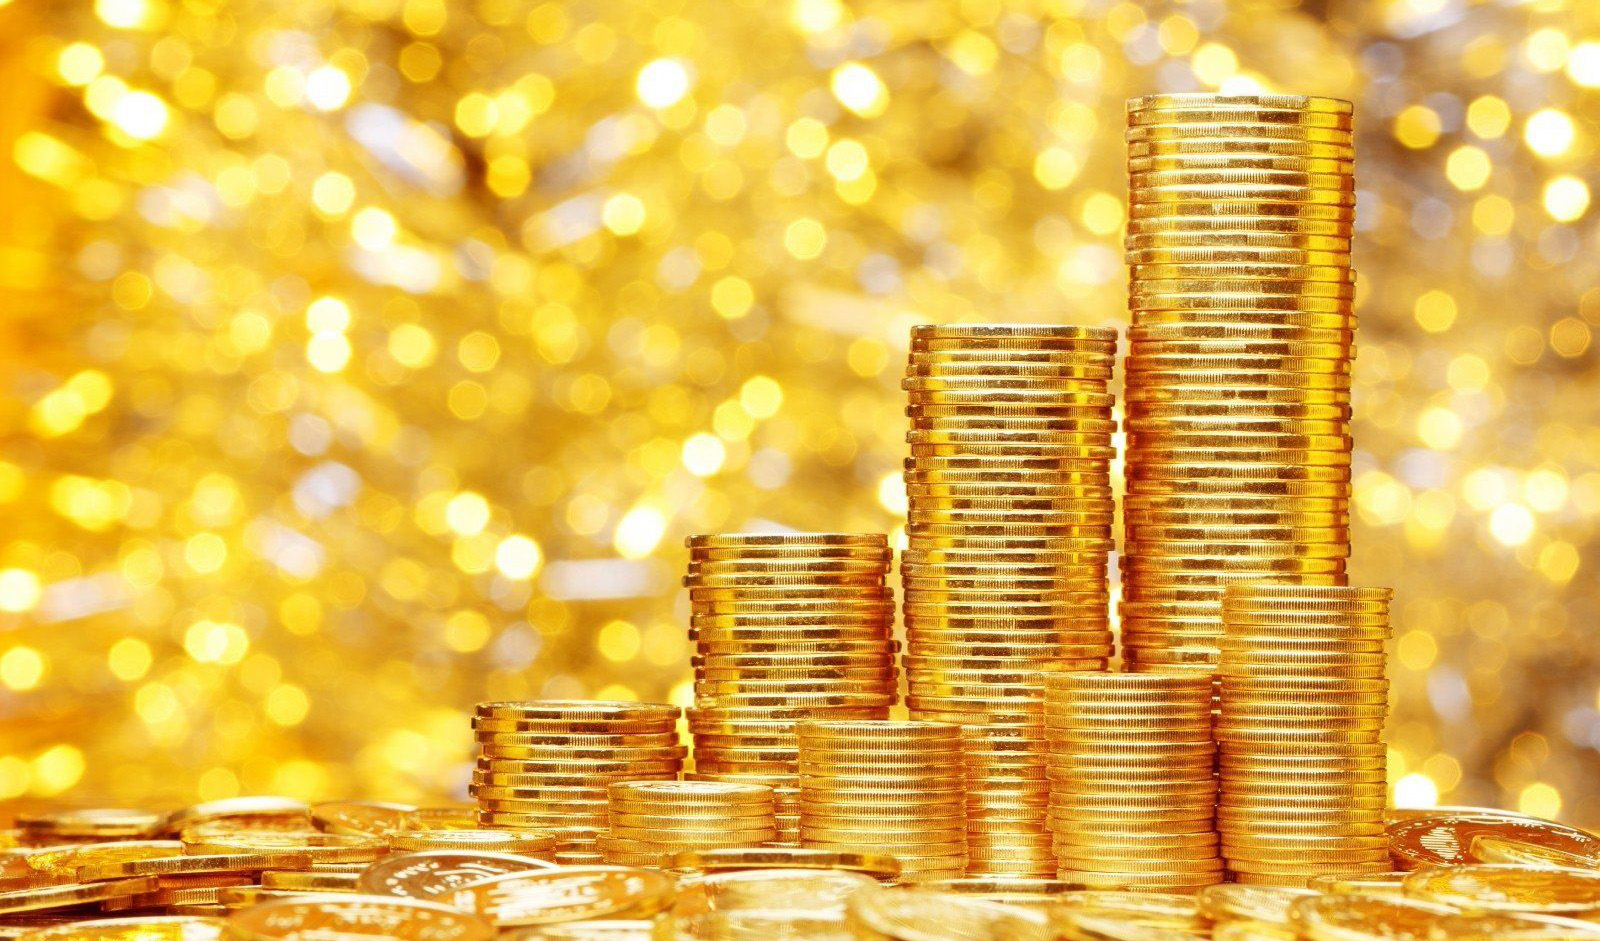 کاهش ۱۳۰هزار تومانی قیمت سکه در آخرین روز هفته